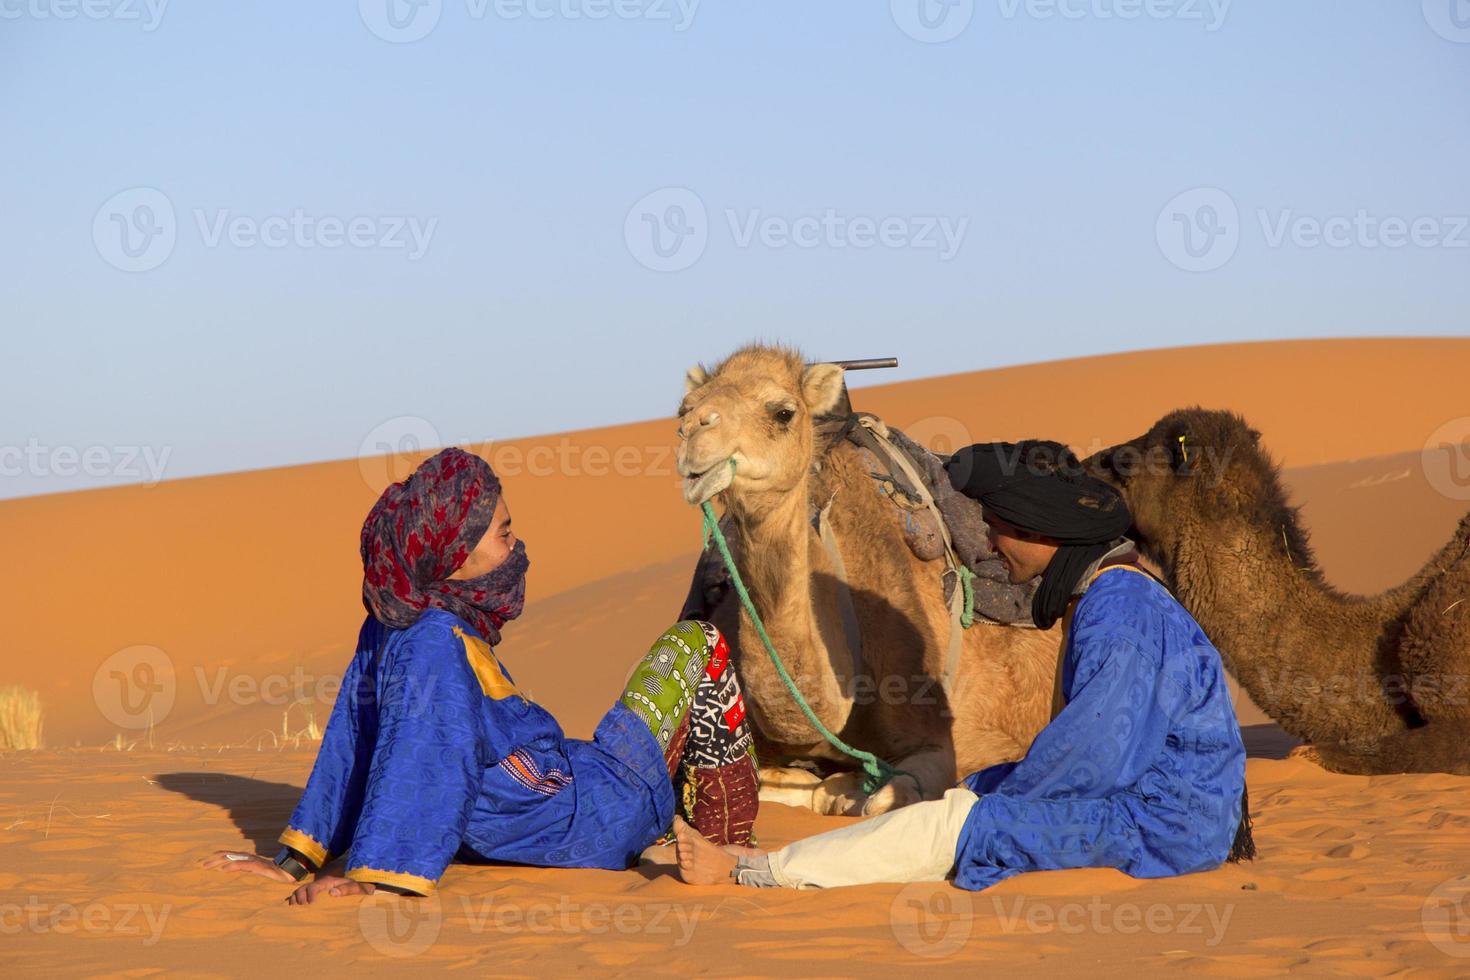 öken och beduiner foto